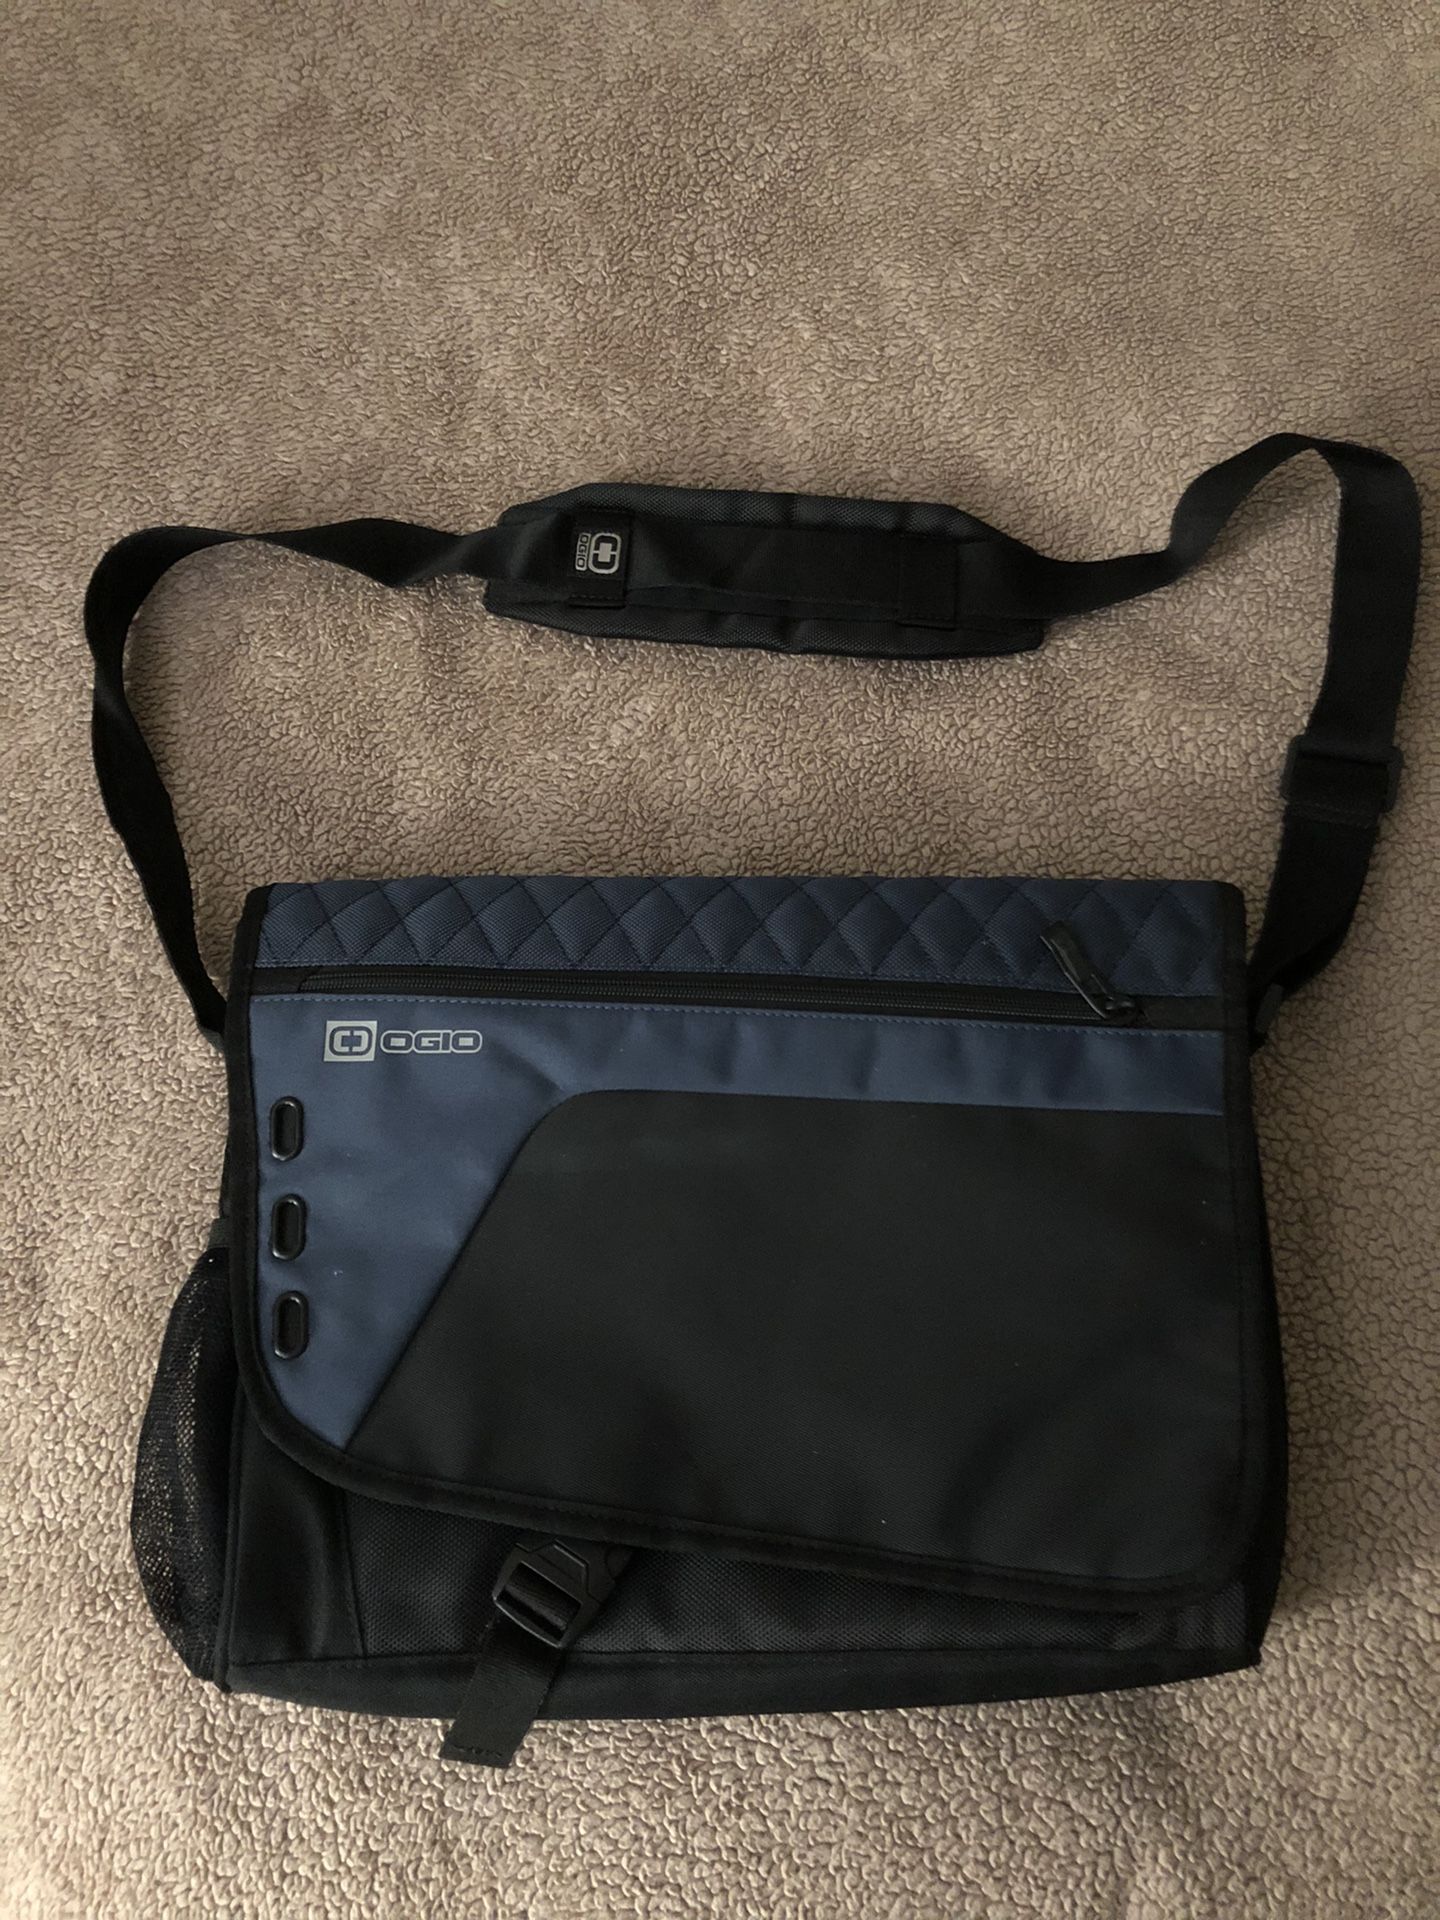 New Ogio messenger bag